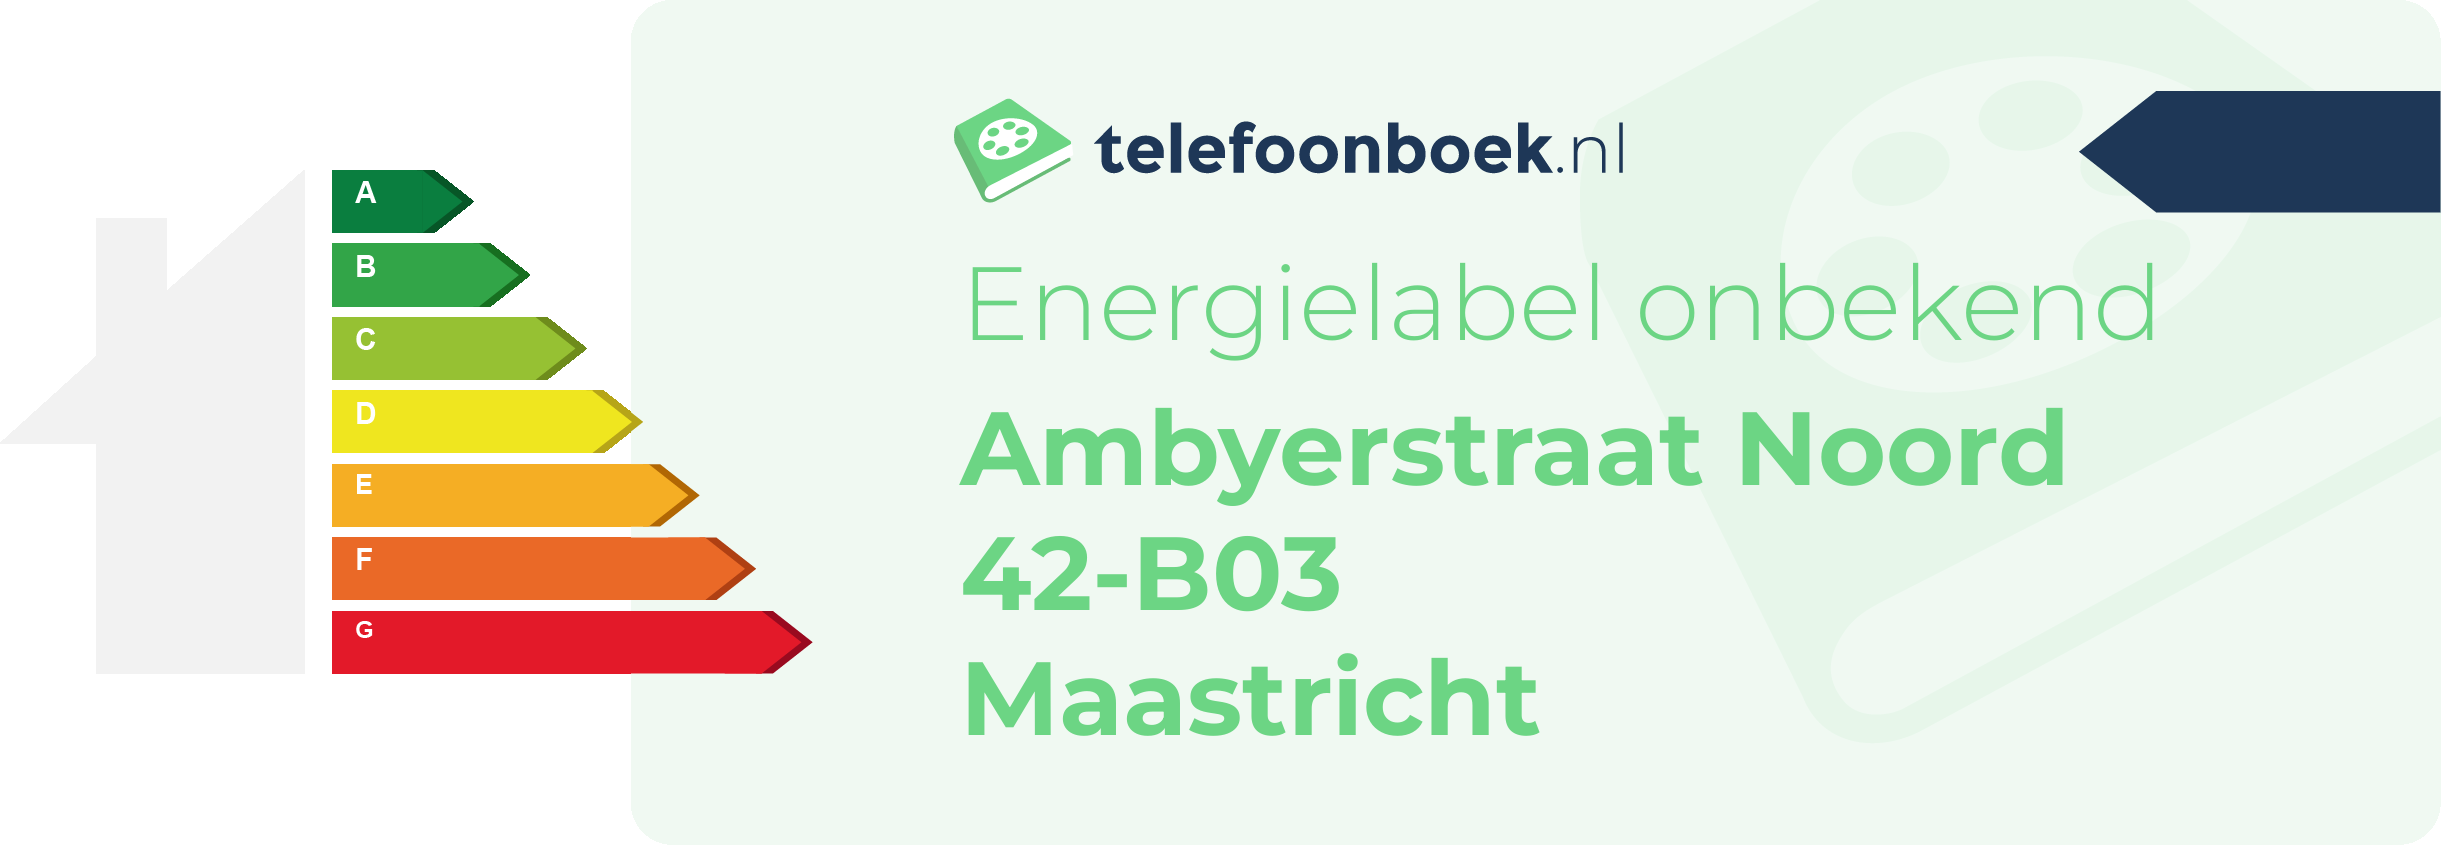 Energielabel Ambyerstraat Noord 42-B03 Maastricht